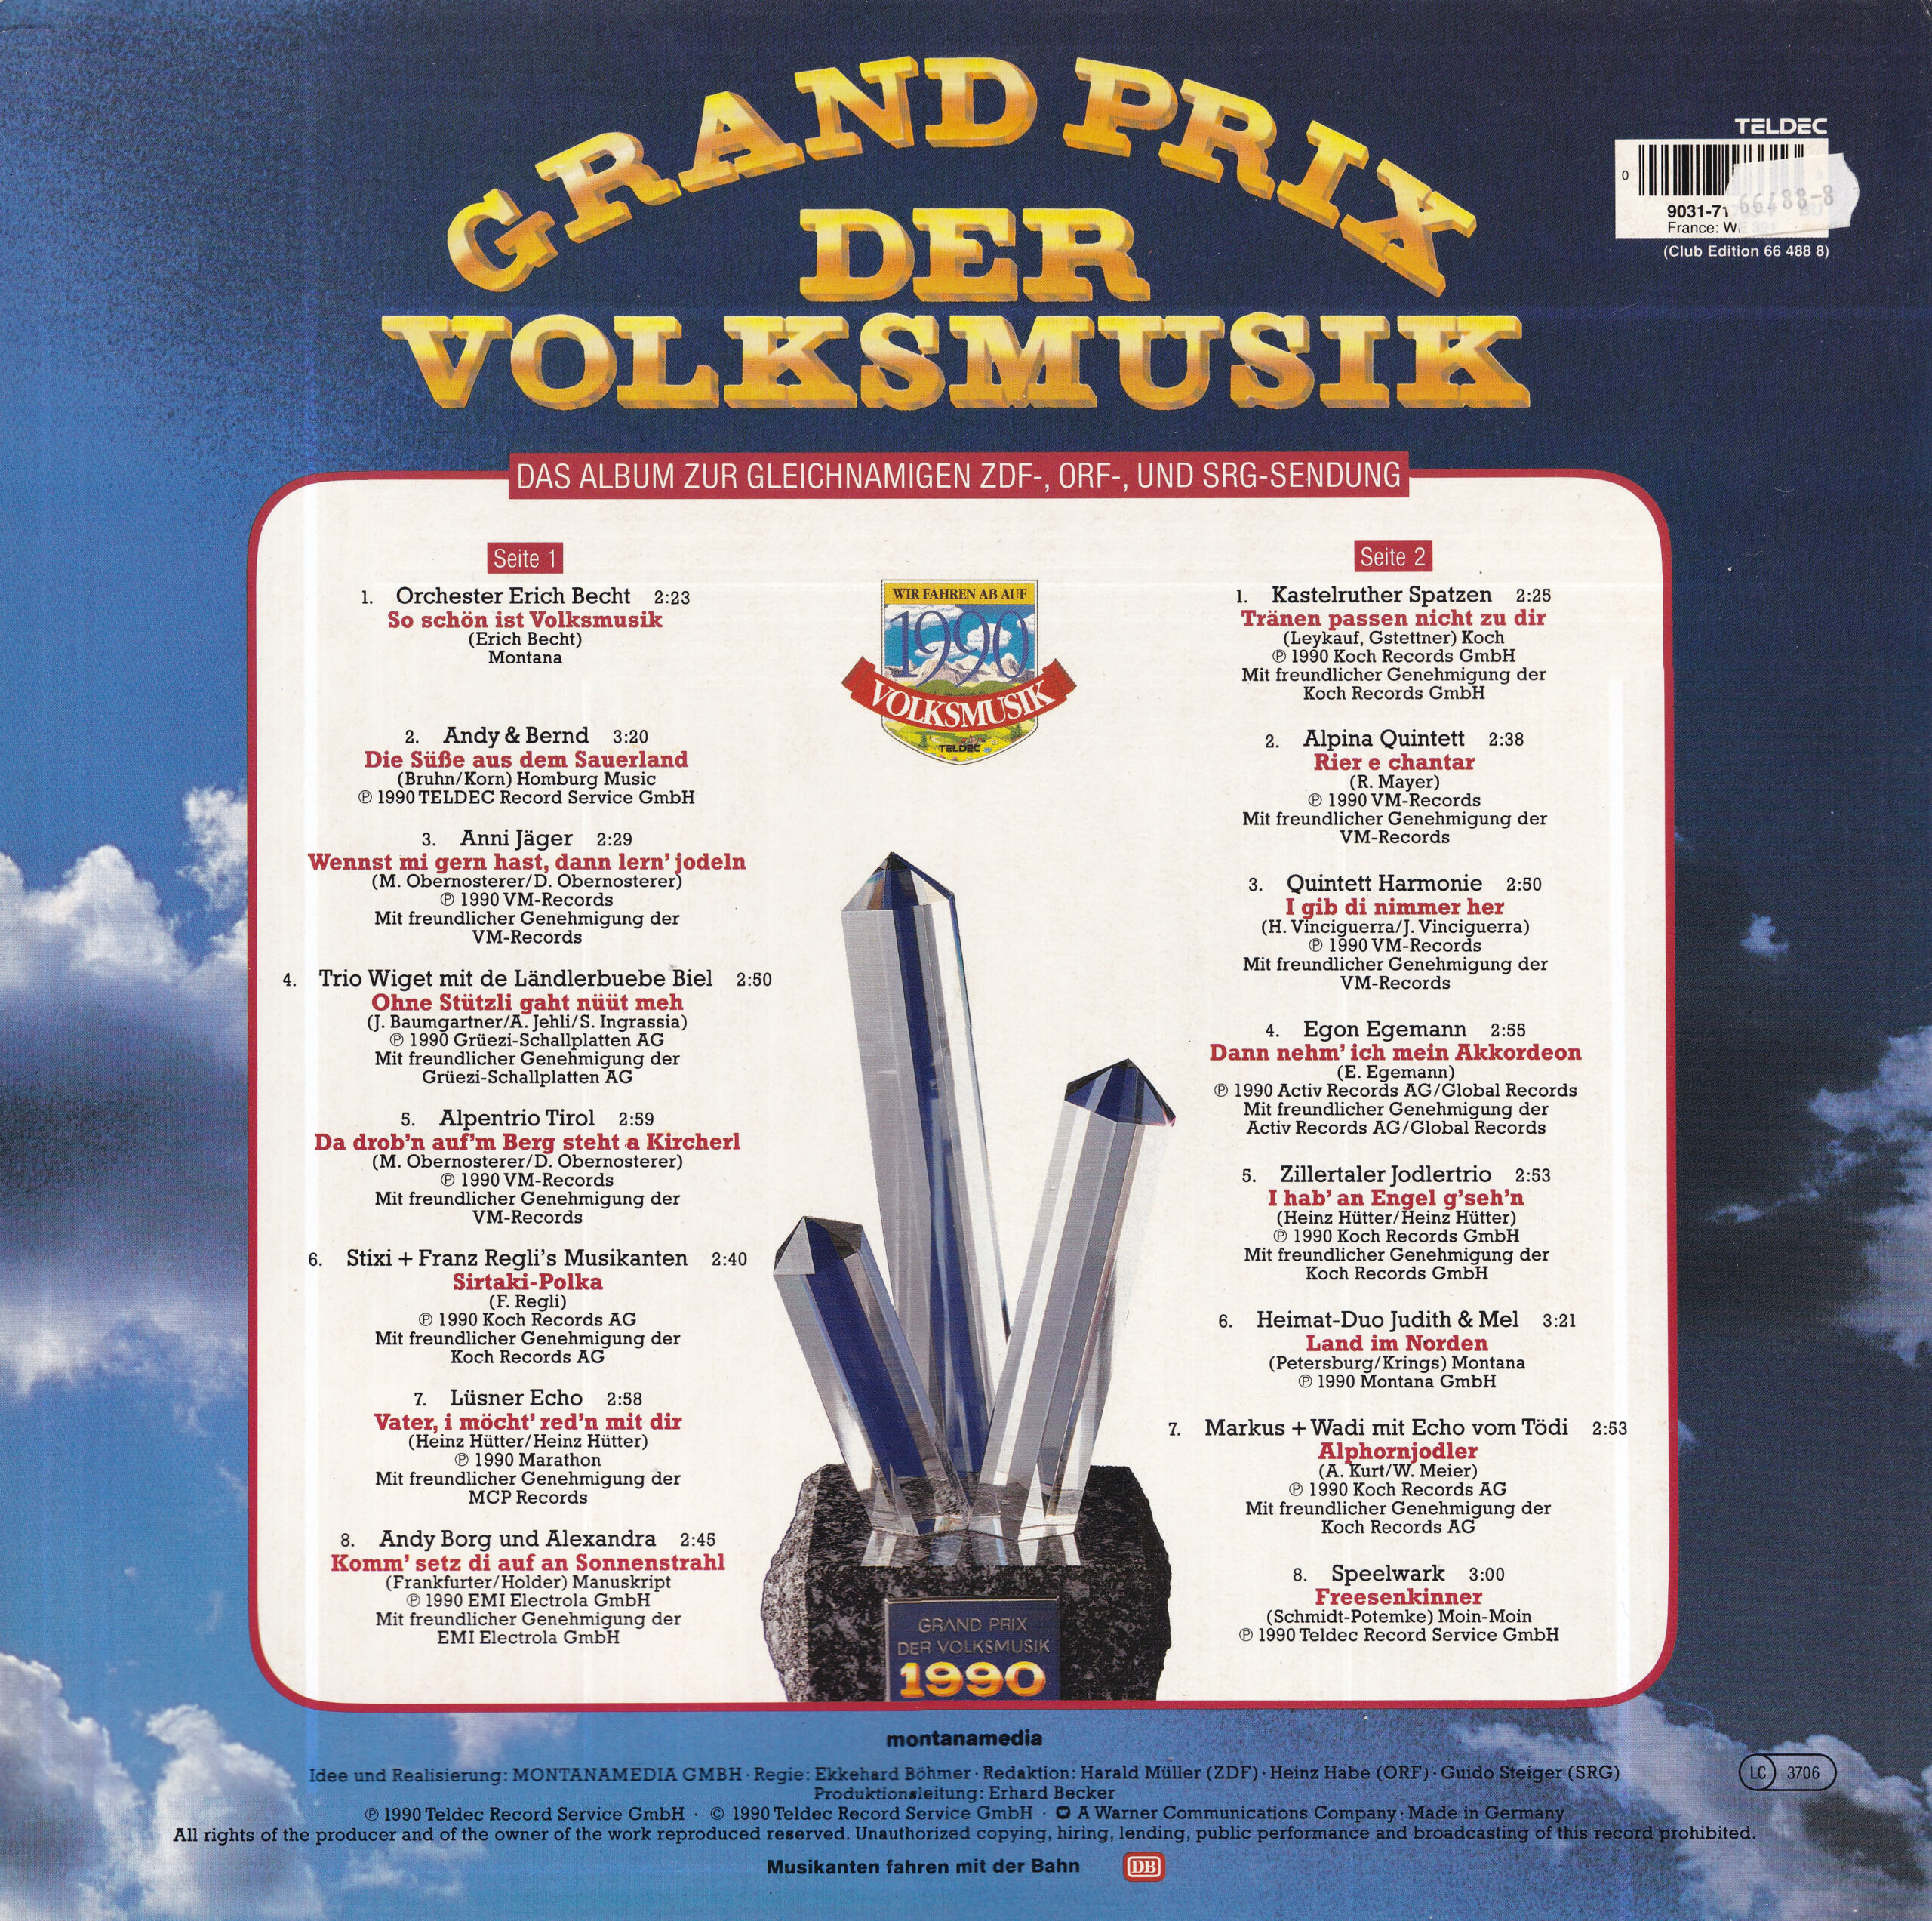 Grand Prix der Volksmusik 1990 – 2